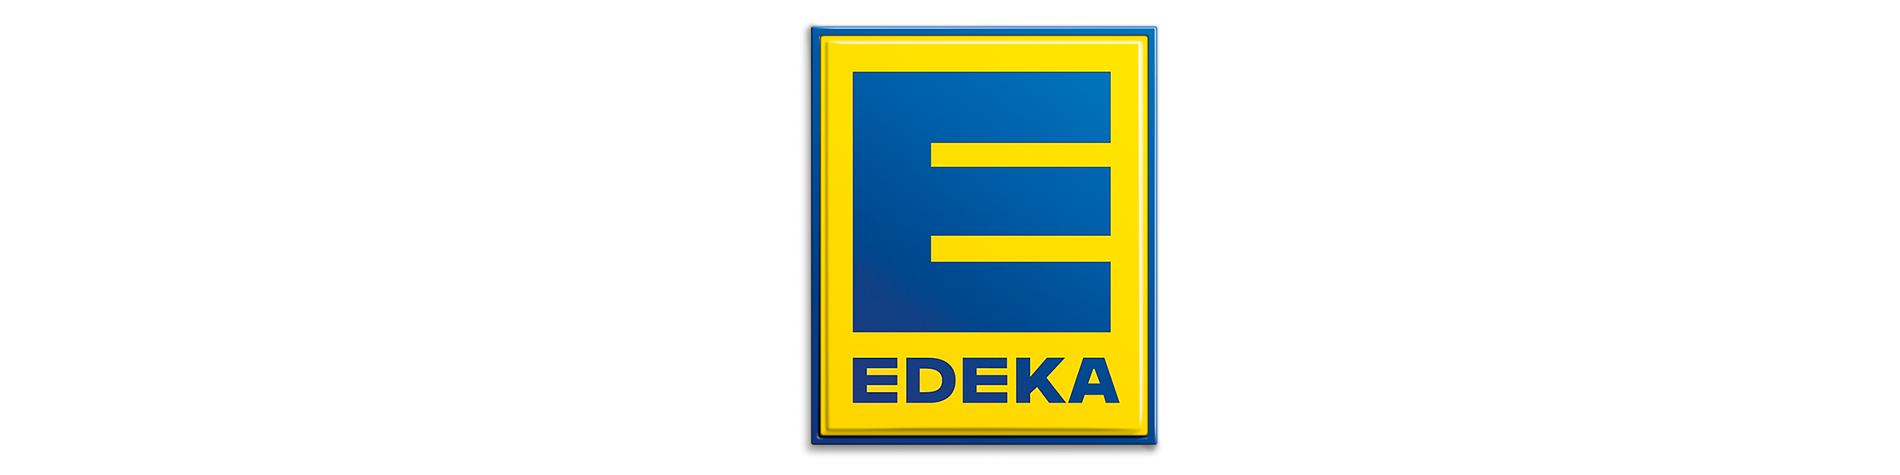 Edeka_4_1